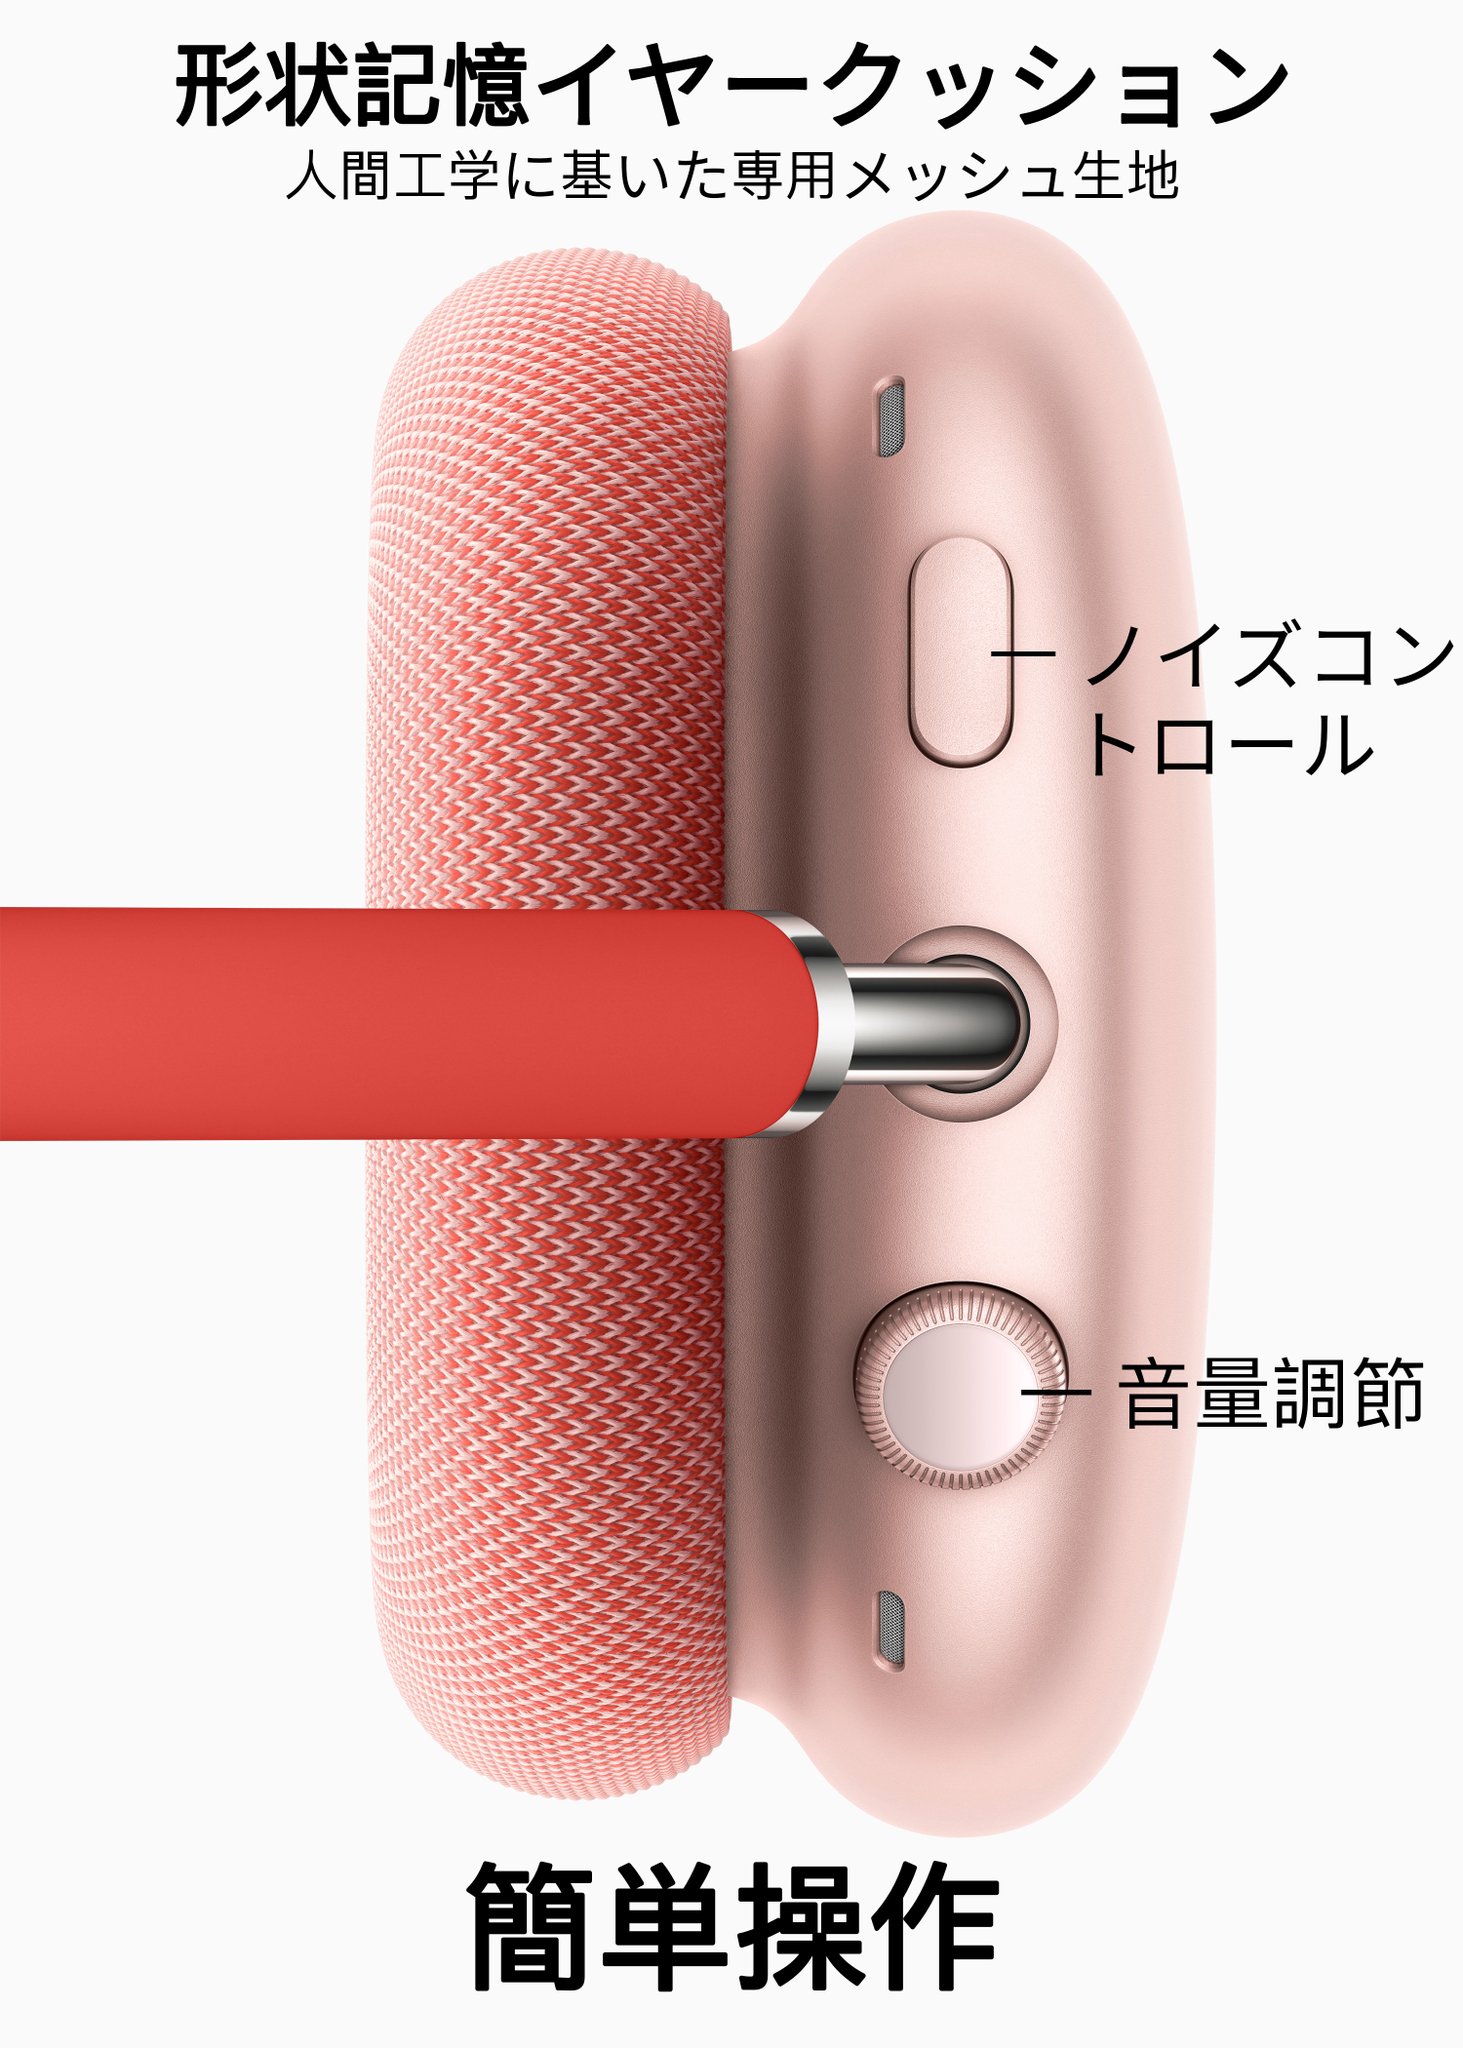 【既視感】Appleの『AirPods Max』のデザインが酷かったので“怪しげな日本語紹介”を付け加えてみた結果wwww